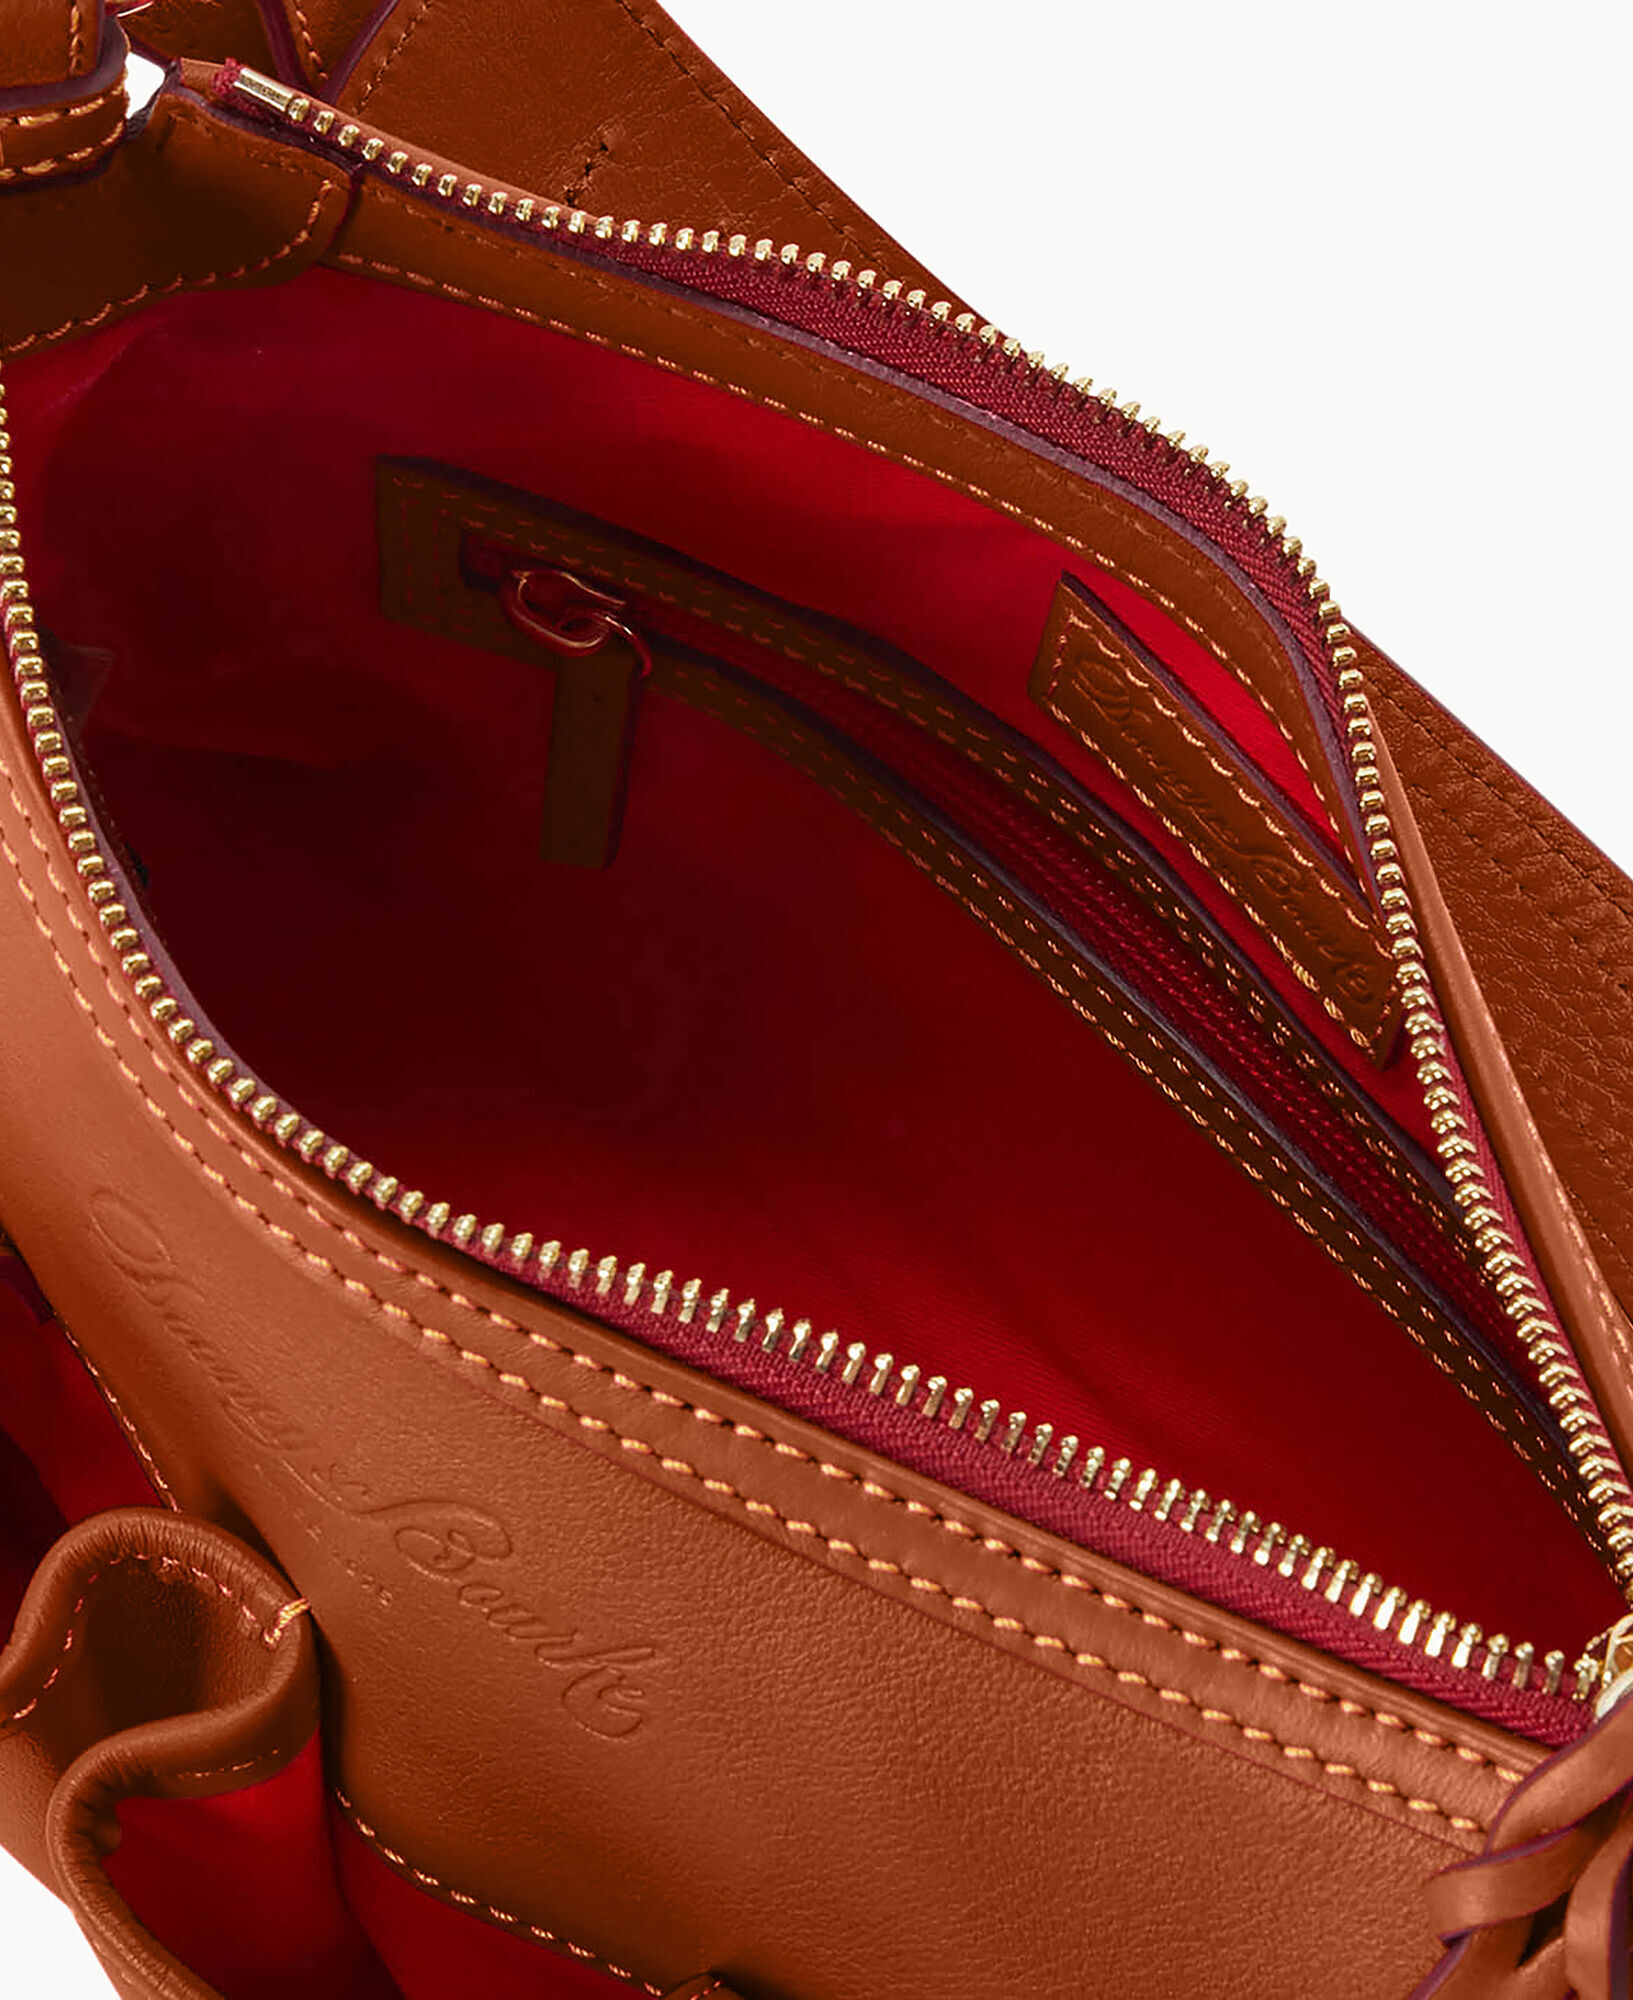 Dooney Bourke Handbag Purse Leather Red/brown Shoulder Bag